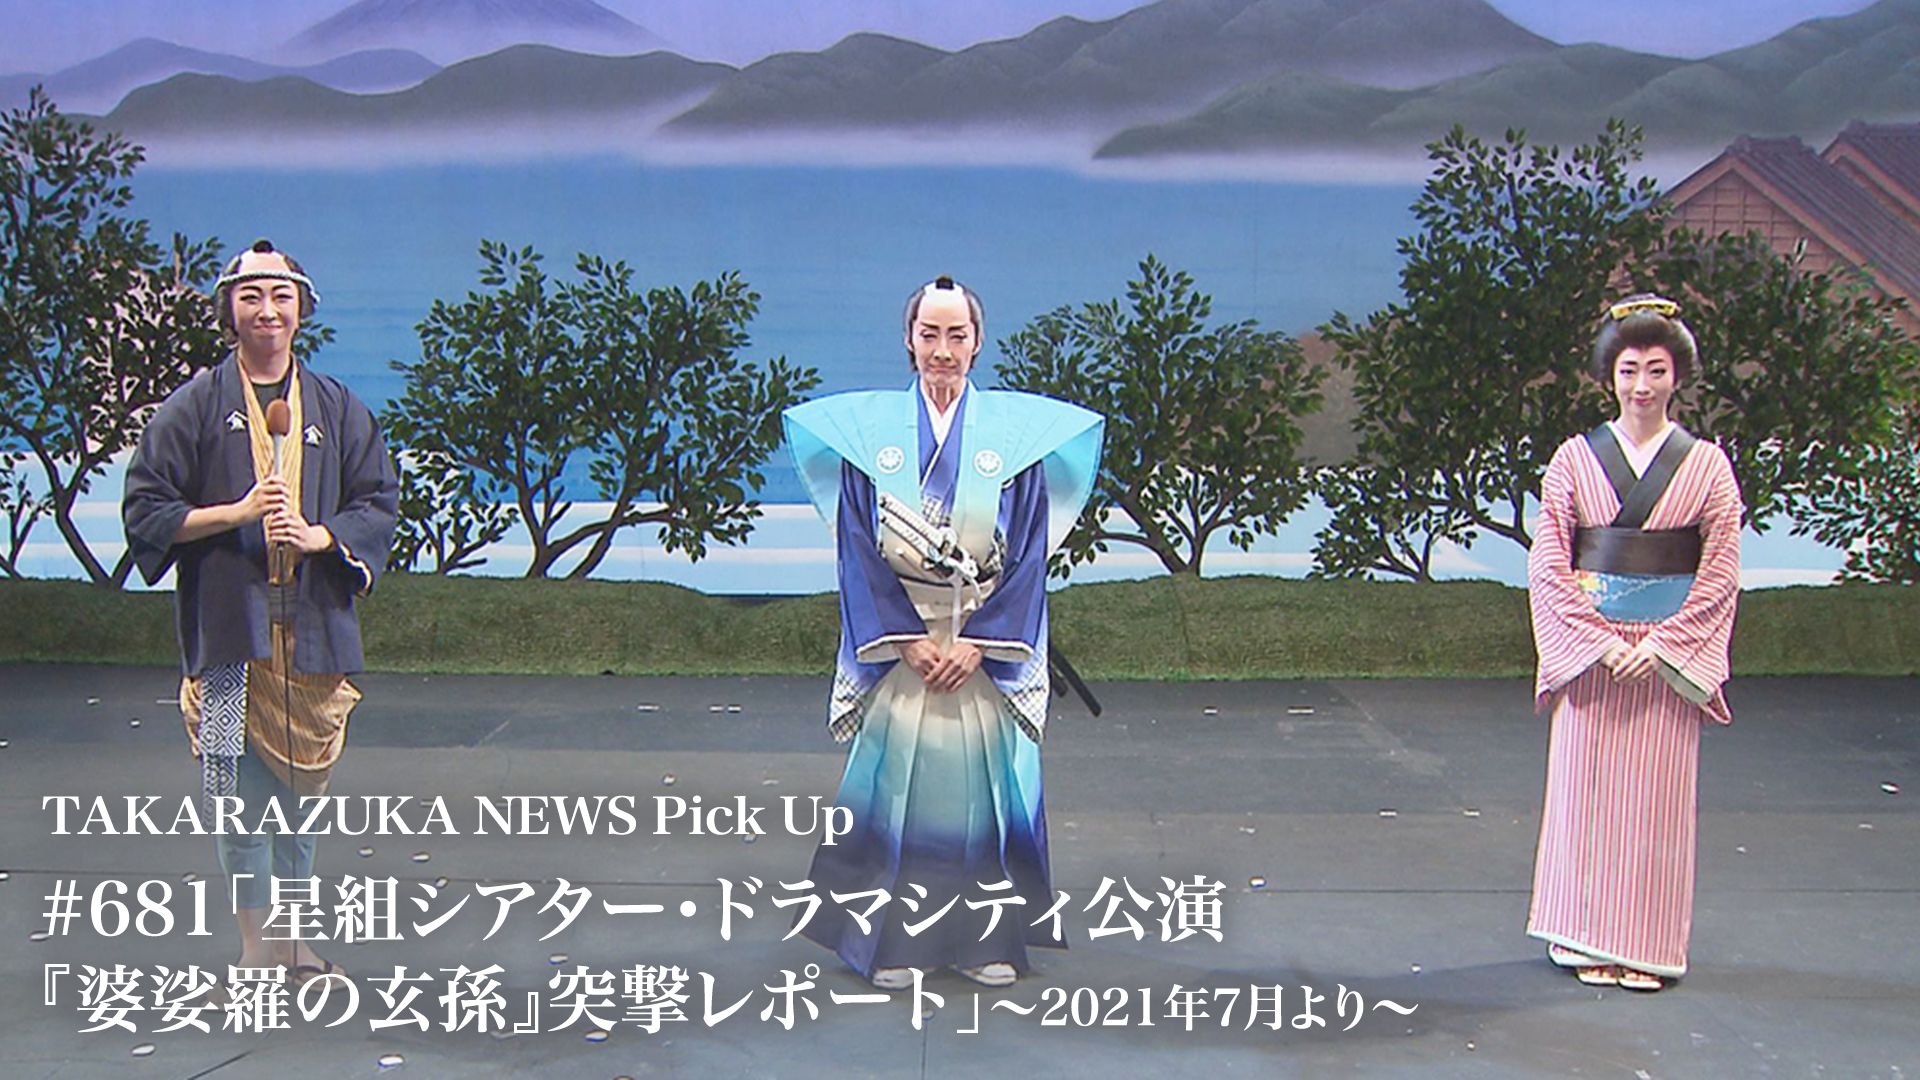 TAKARAZUKA NEWS Pick Up #681「星組シアター・ドラマシティ公演『婆娑羅の玄孫』突撃レポート」